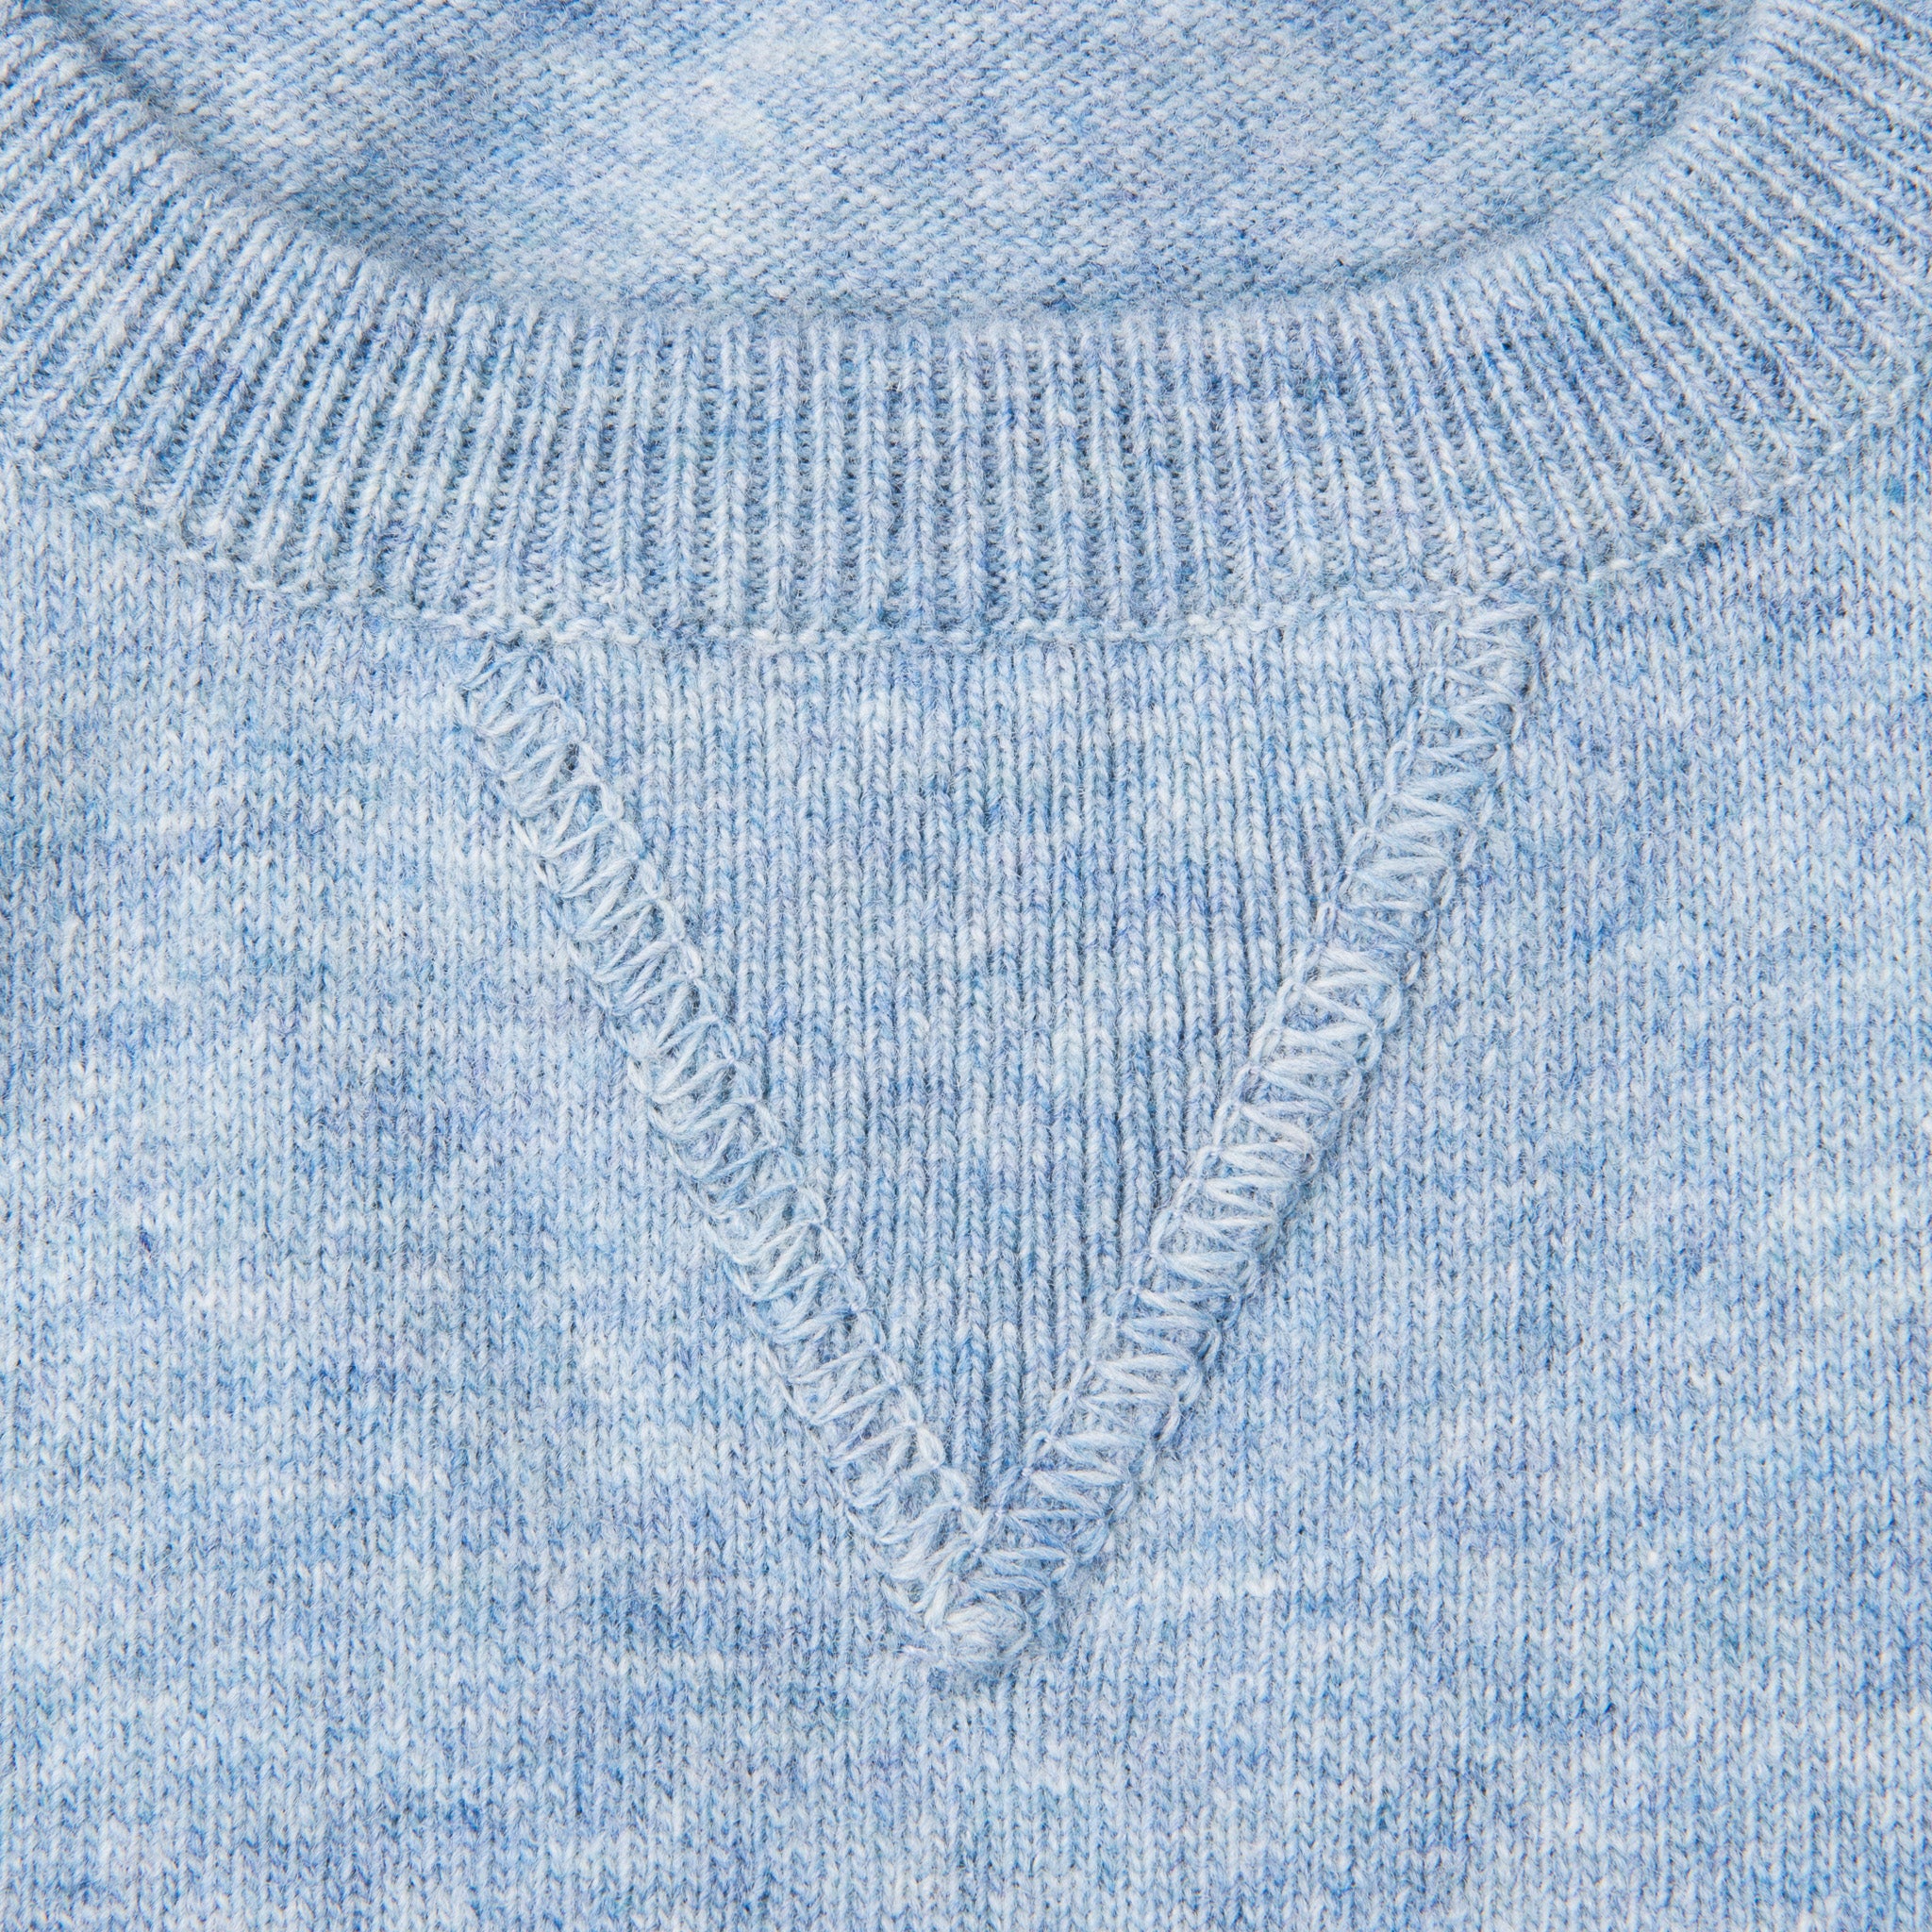 William Lockie x Frans Boone Super Geelong Vintage fit sweater Vintage